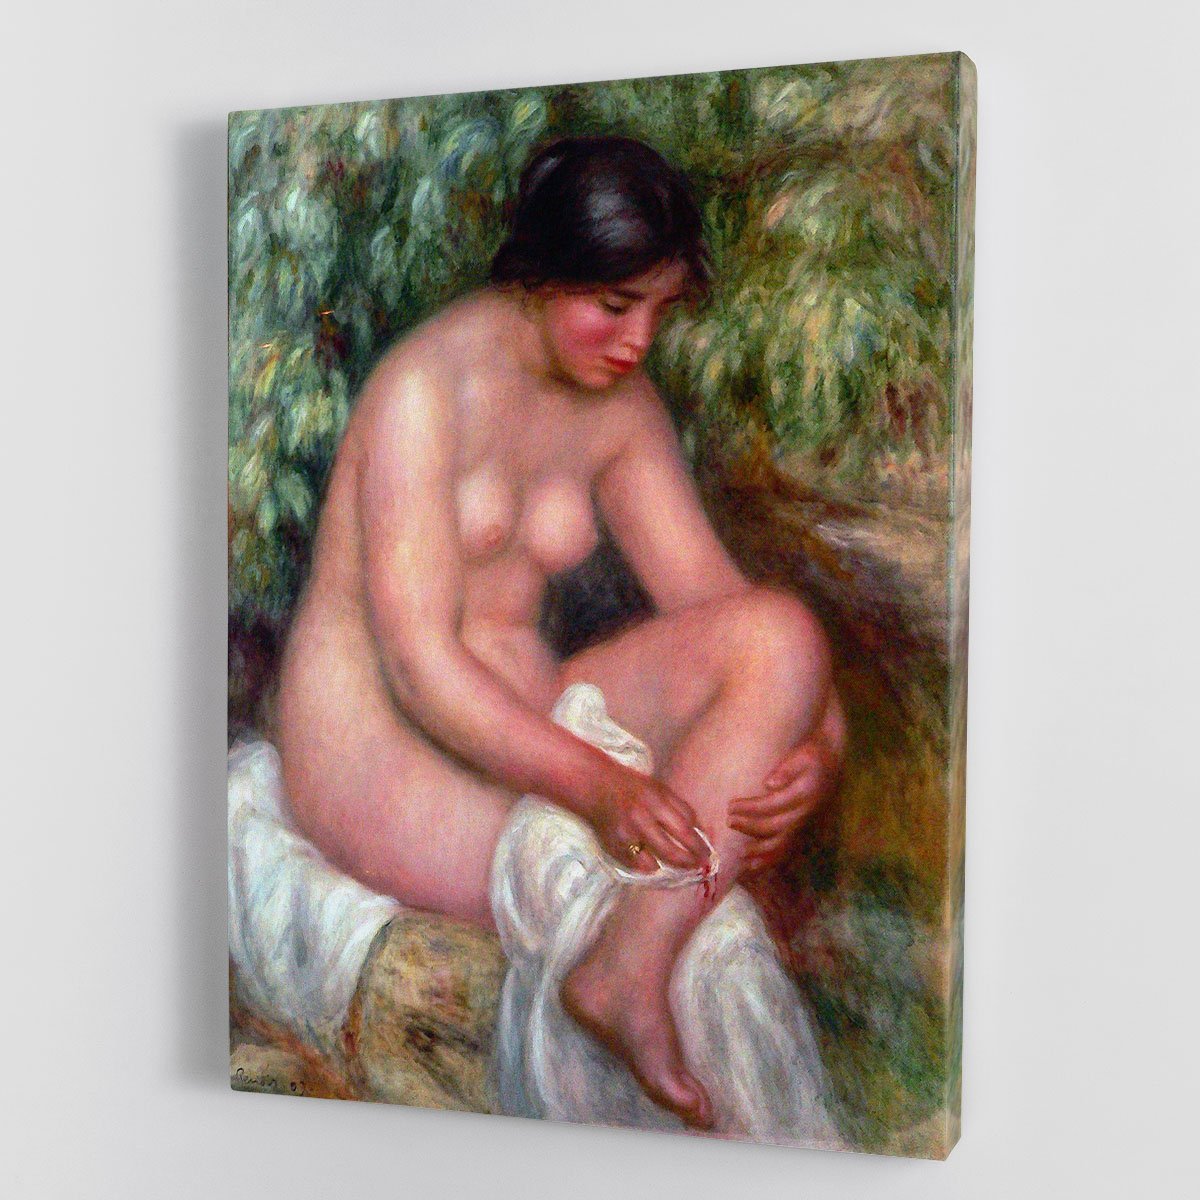 August Renoir Bathing by Renoir Canvas Print or Poster